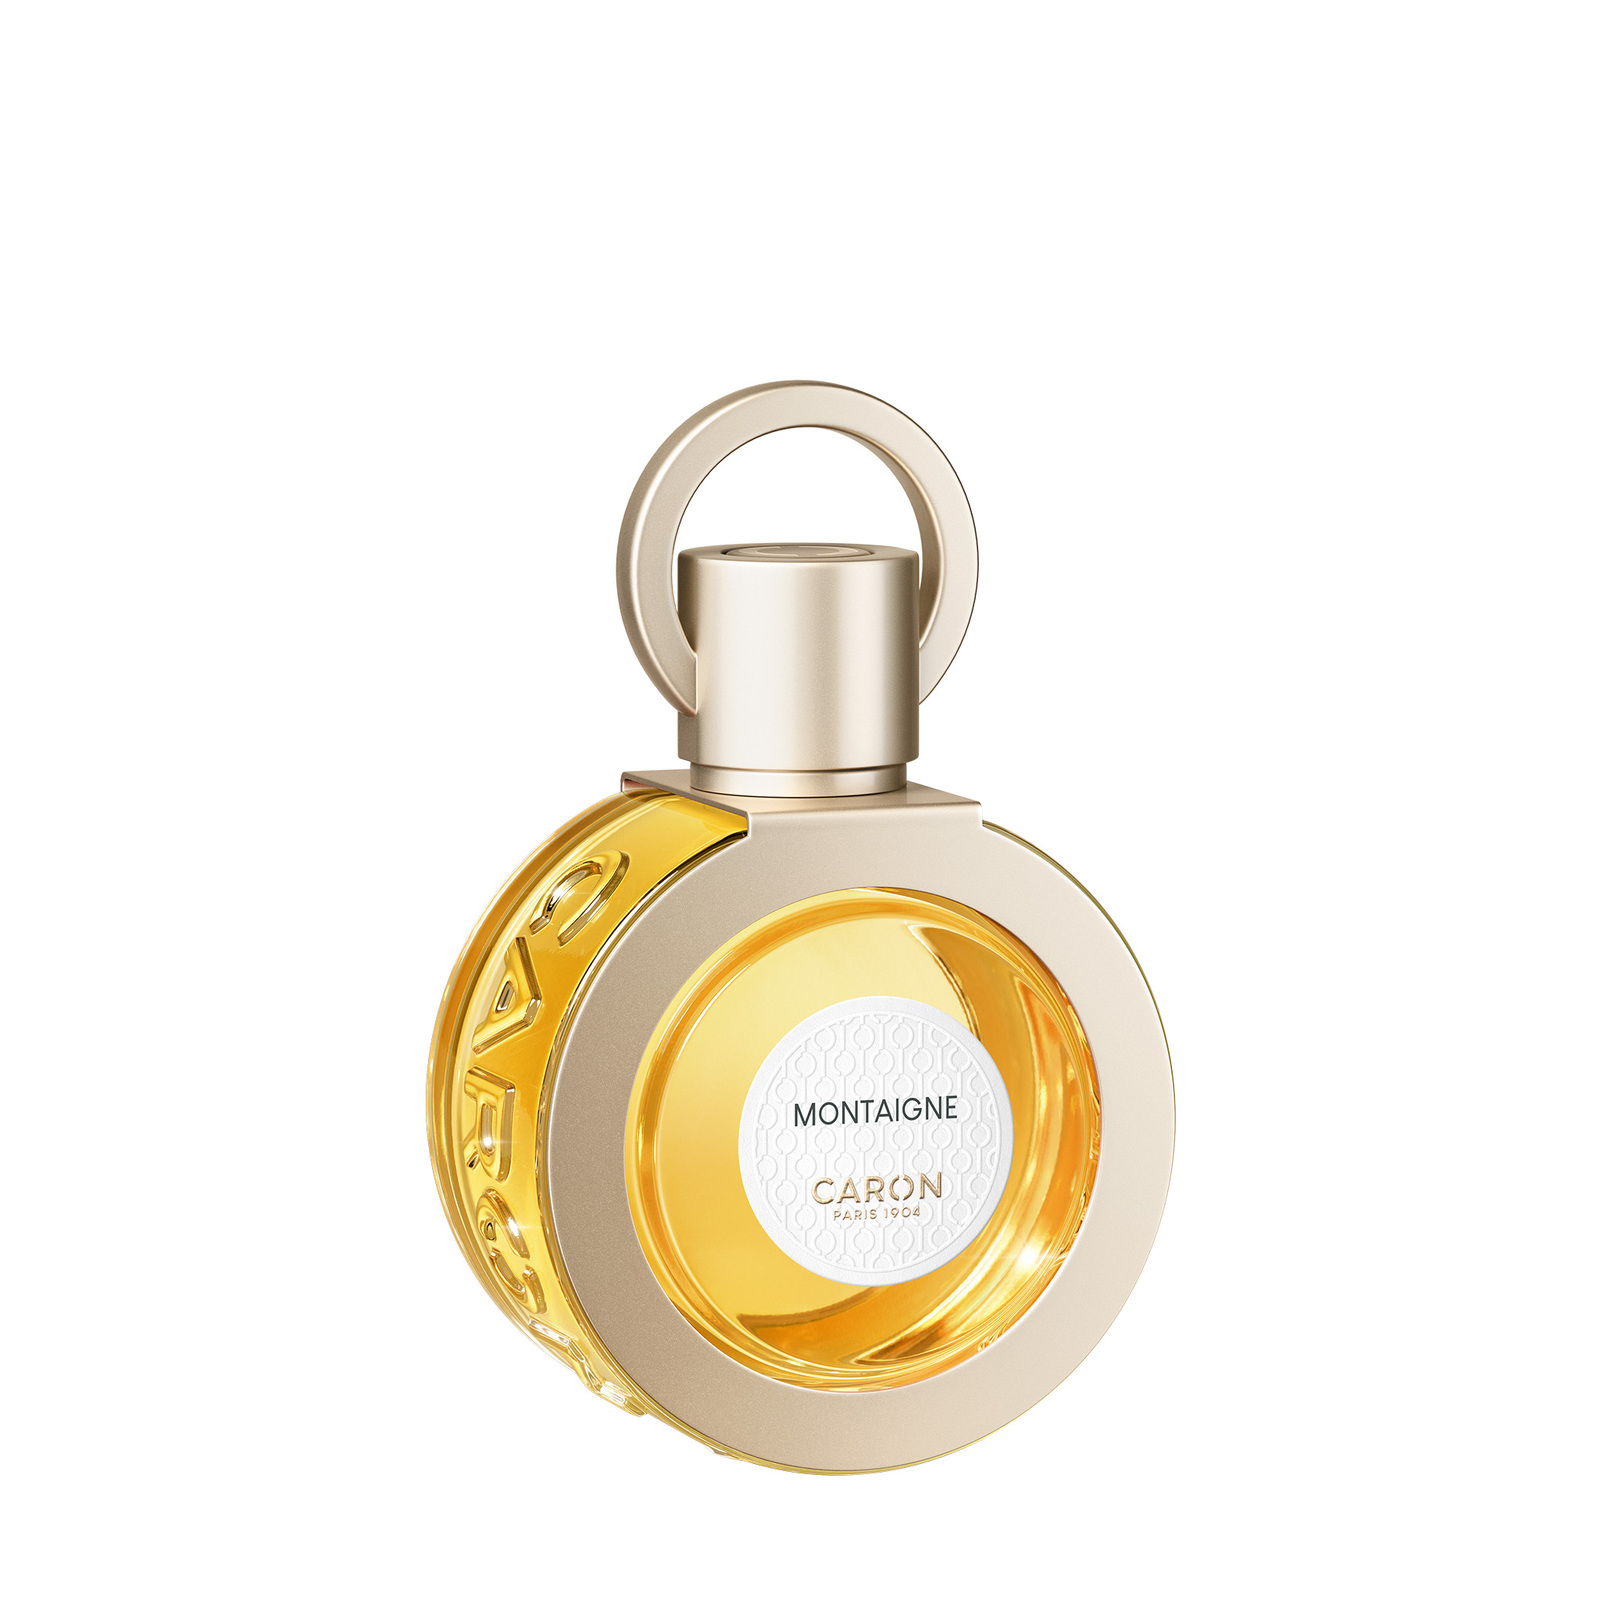 CARON Montaigne Perfume 50ml Refillable